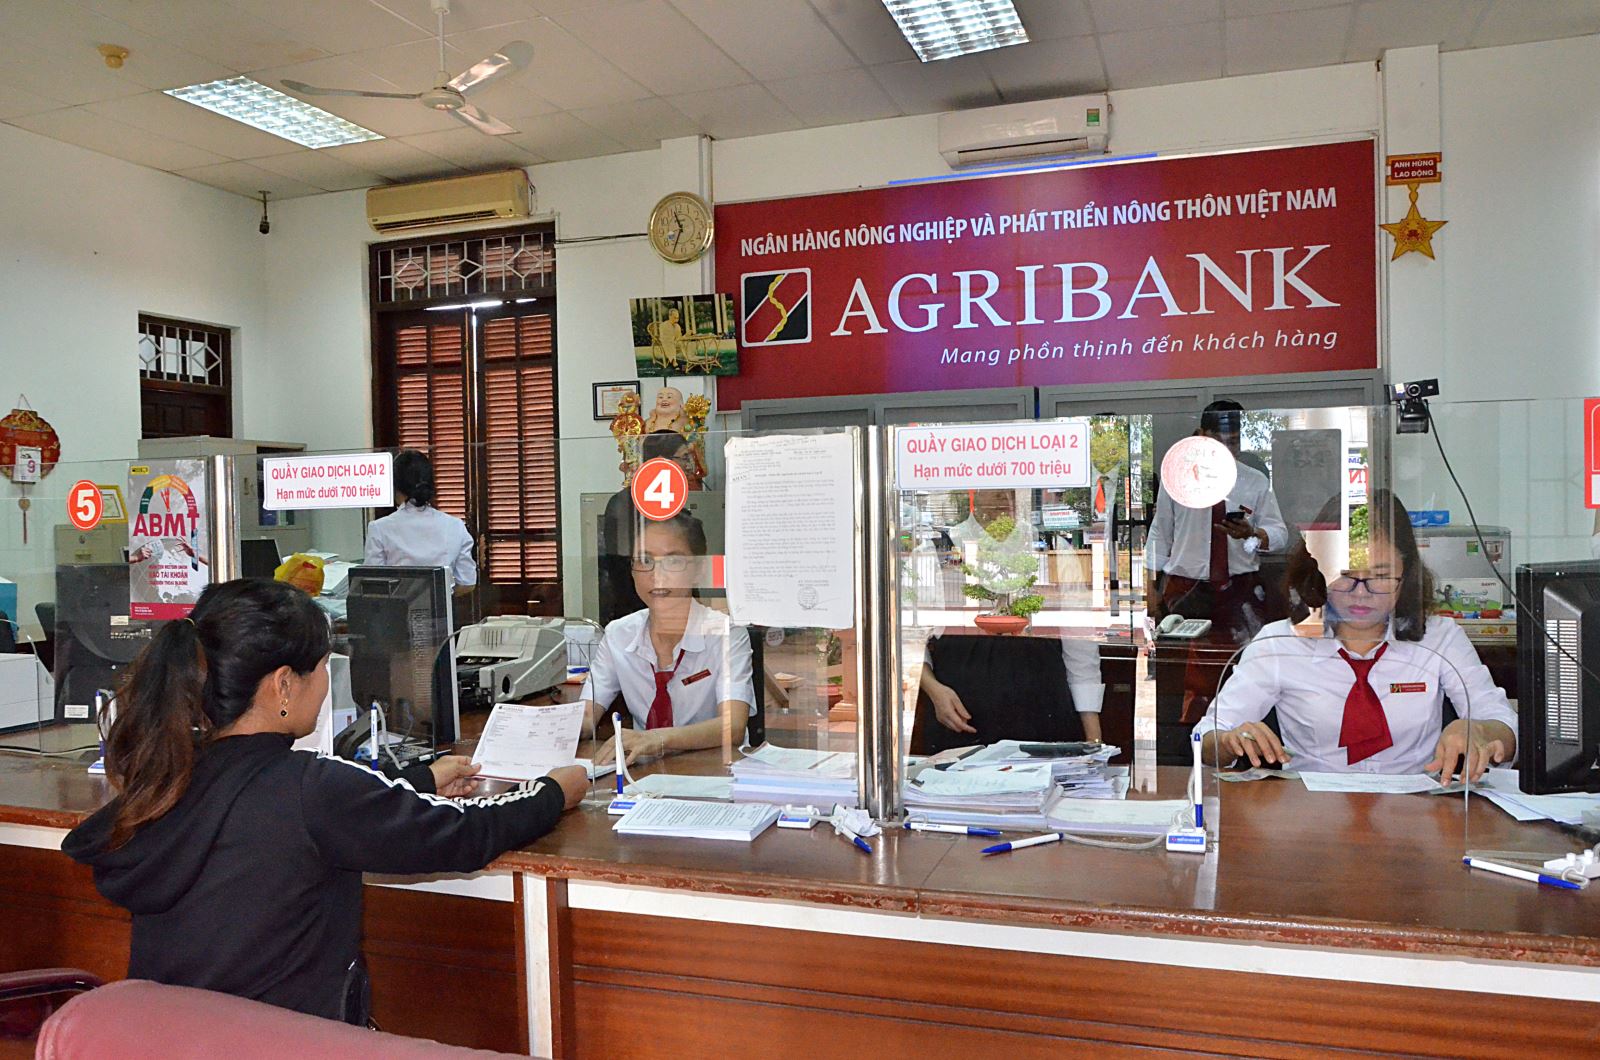 Agribank cùng nỗ lực “xóa” tín dụng đen